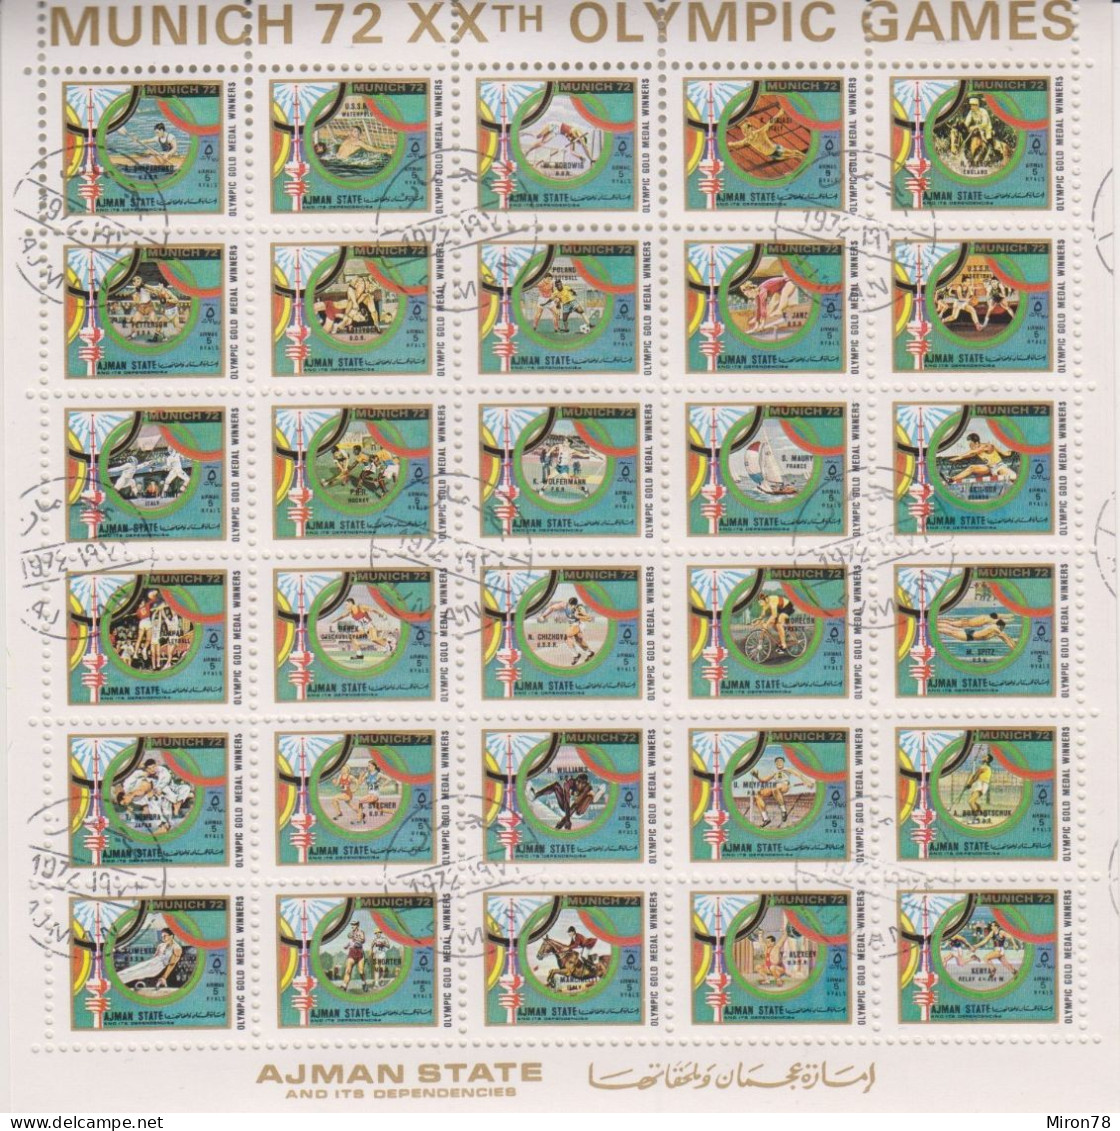 AJMAN OLYMPIC GAMES MUNICH 1972 #1605-34 SH USED (MNH-MICHEL 150 EURO!!!) - Ete 1972: Munich